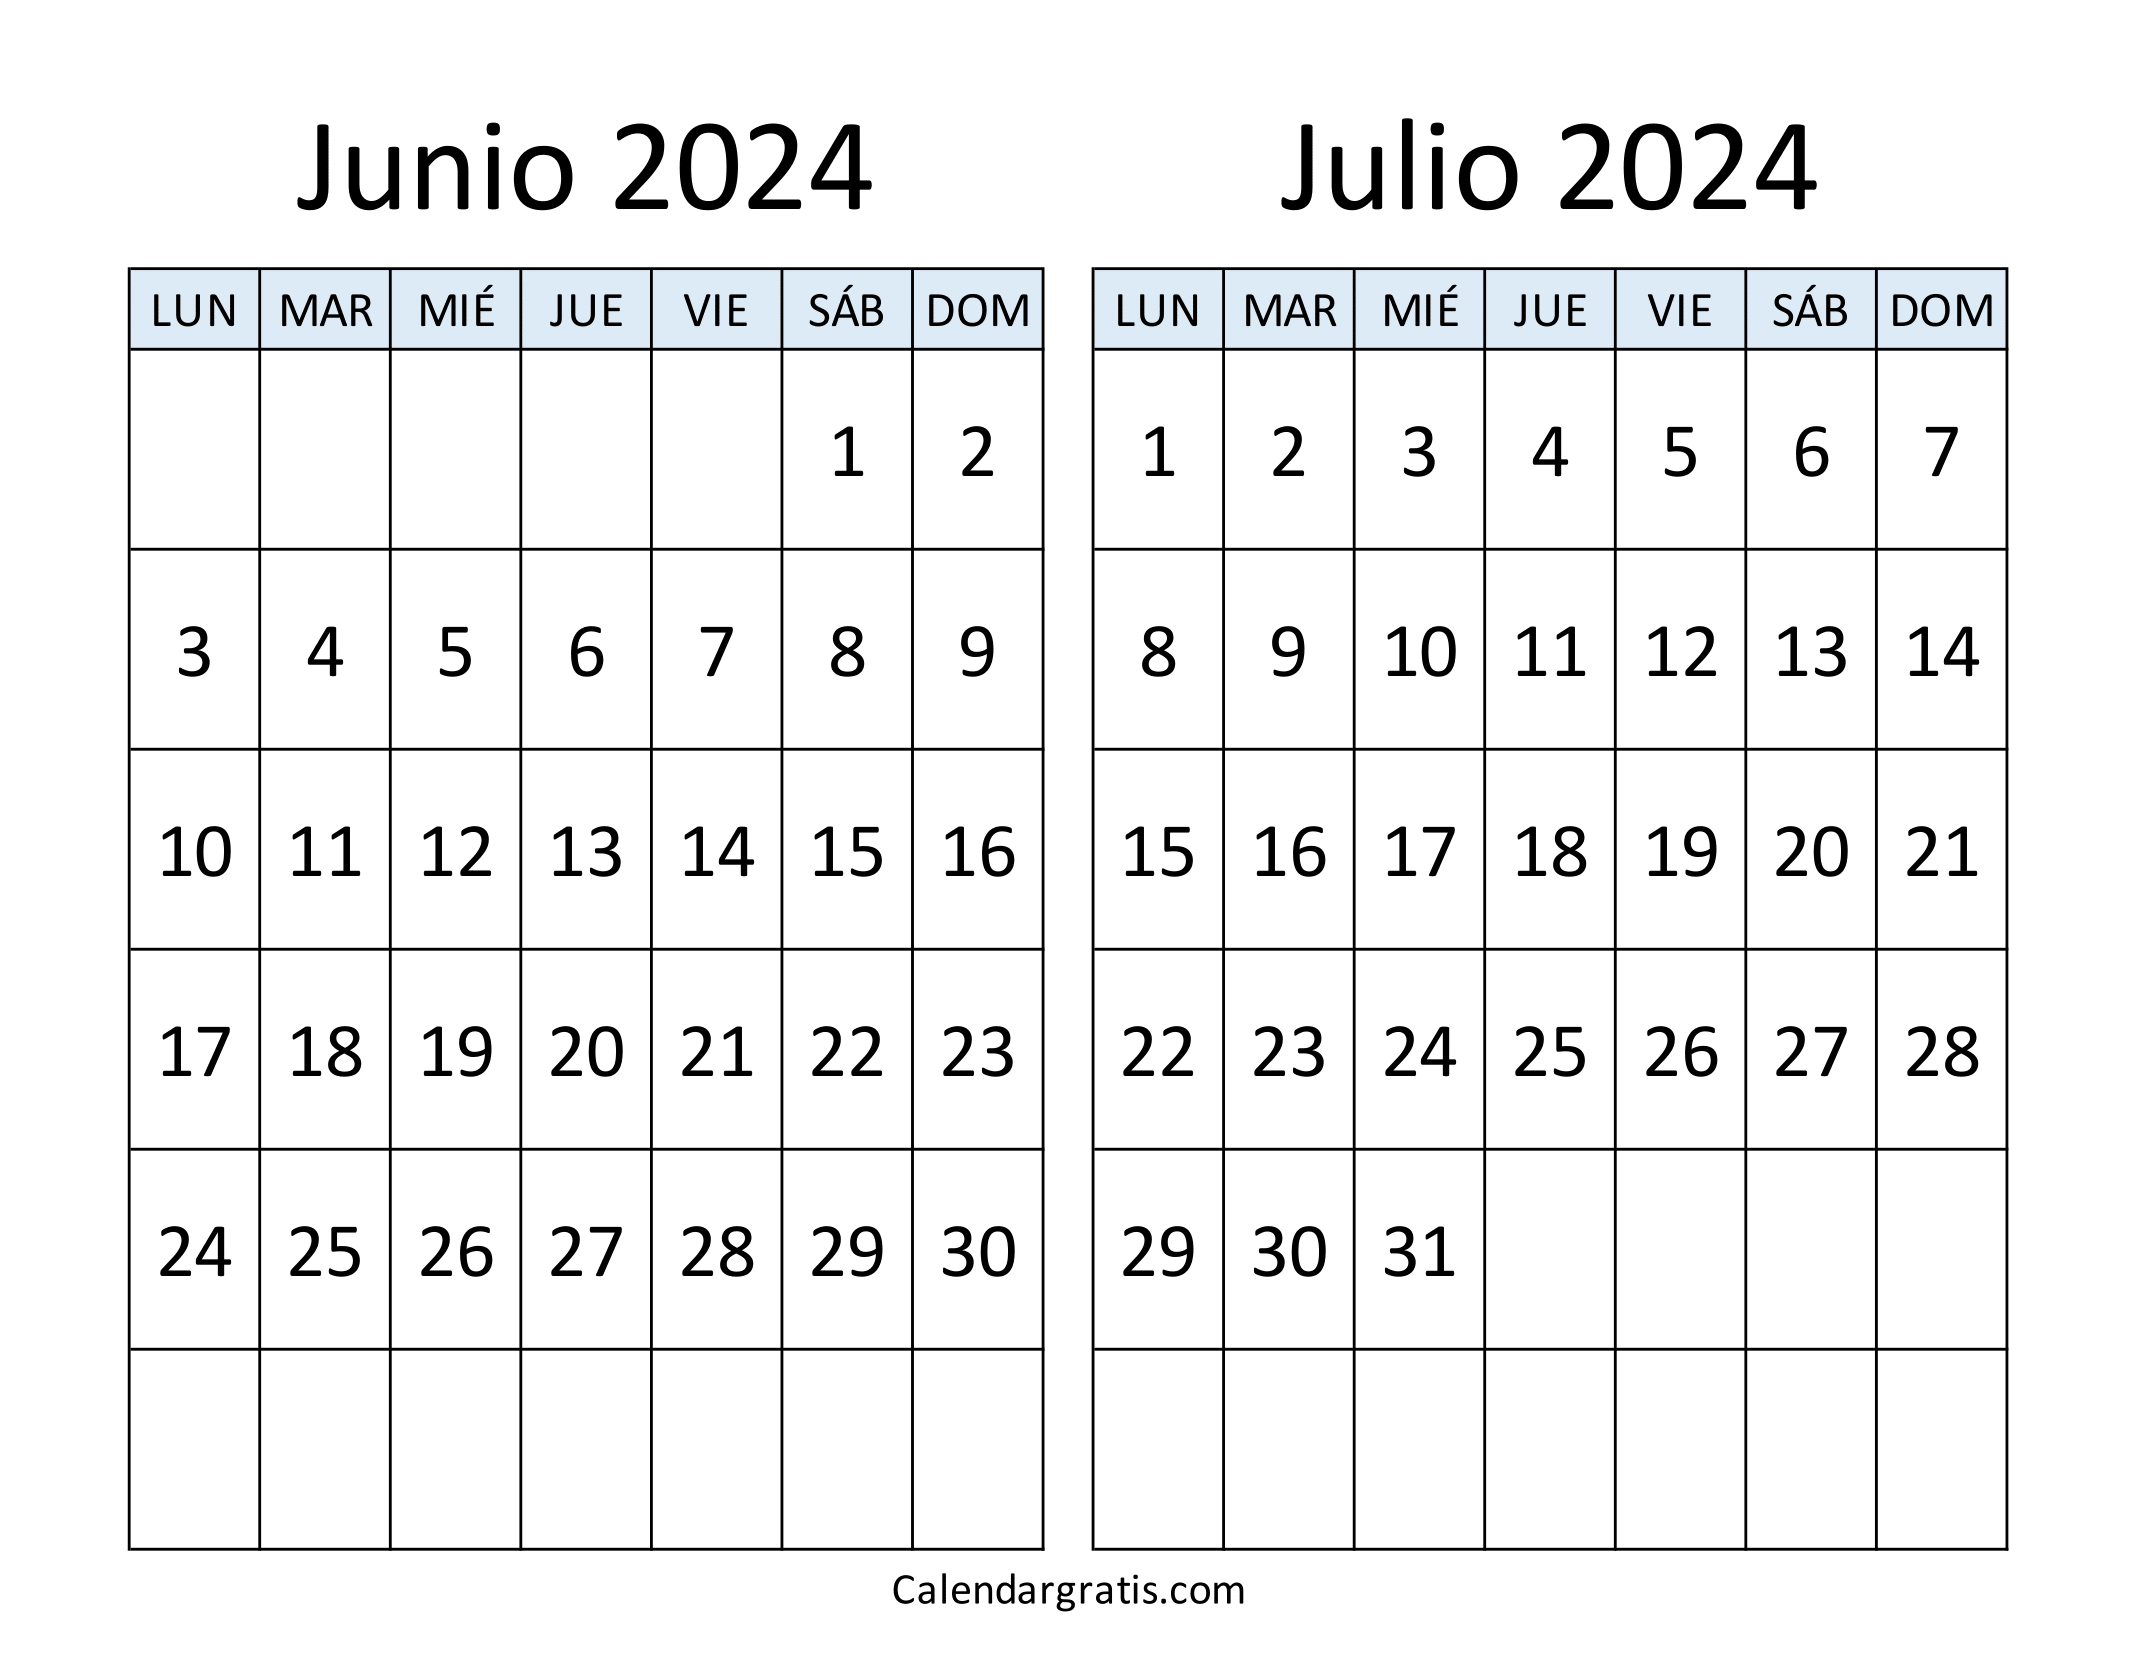 Junio julio 2024 calendario